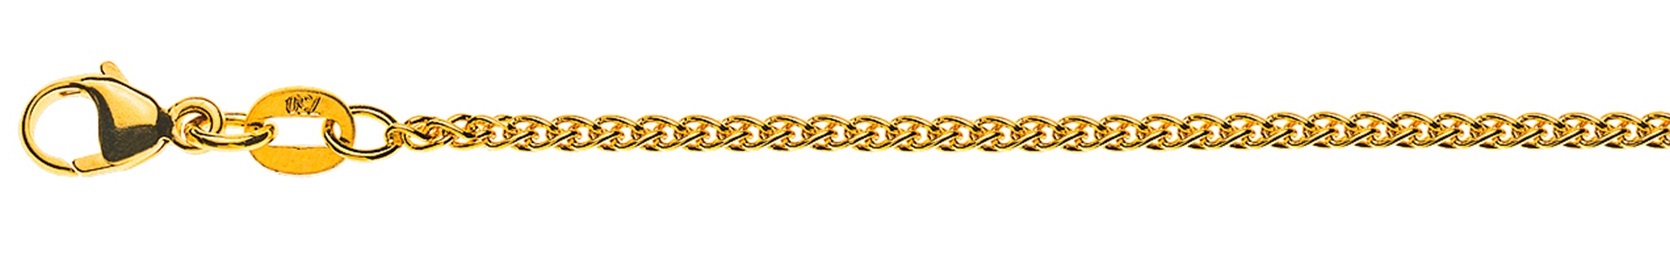 AURONOS Élégance Necklace yellow gold 14K cable chain 60cm 1.6mm